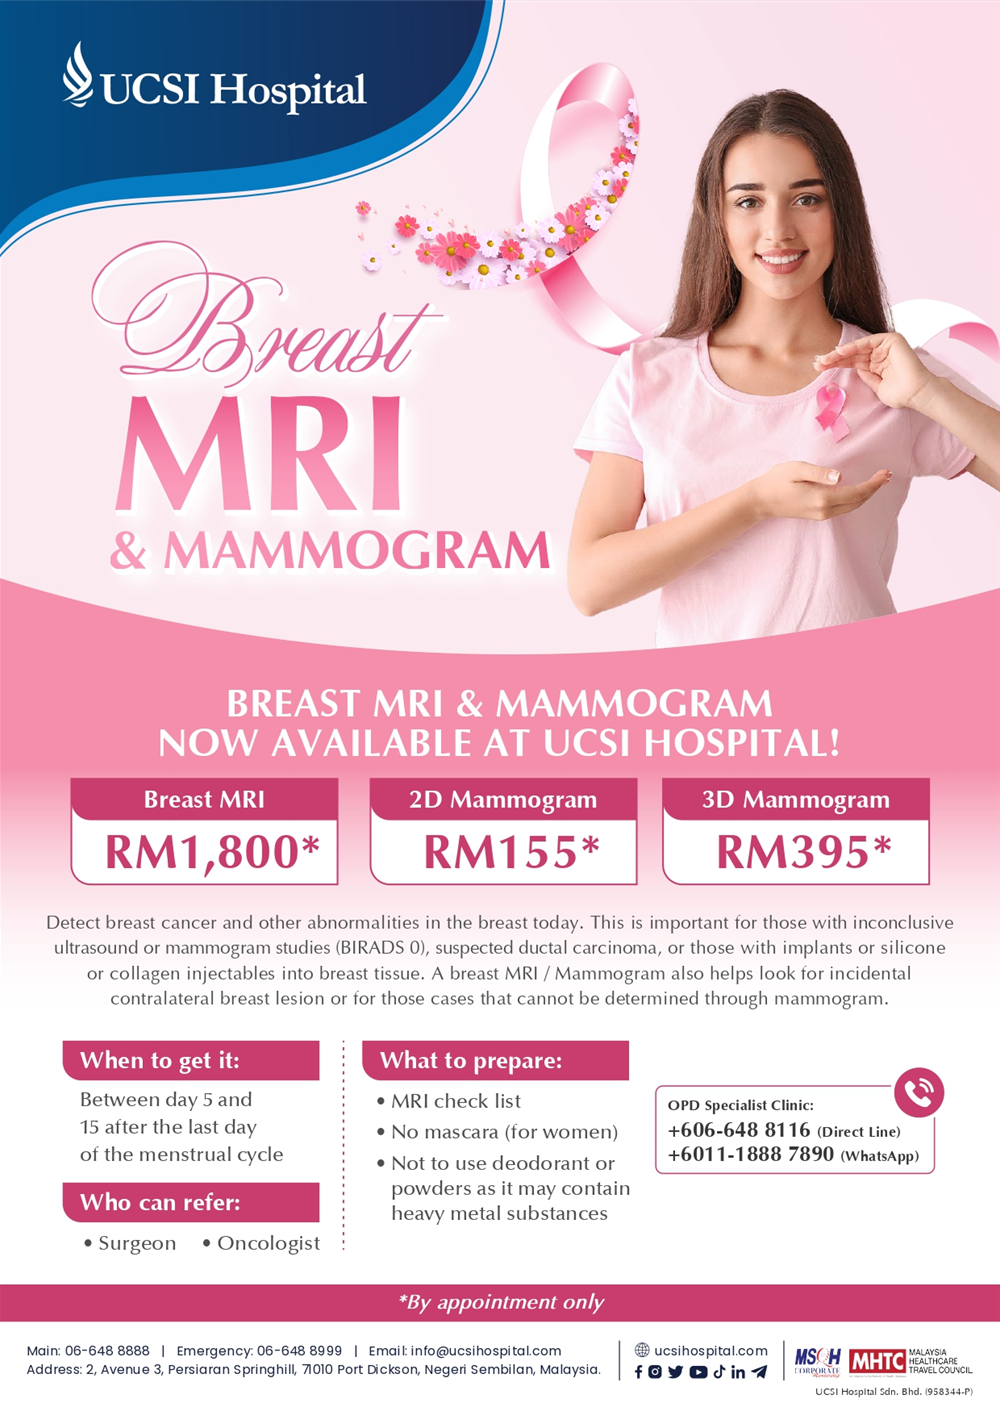 乳房 MRI 和乳房 X 光检查